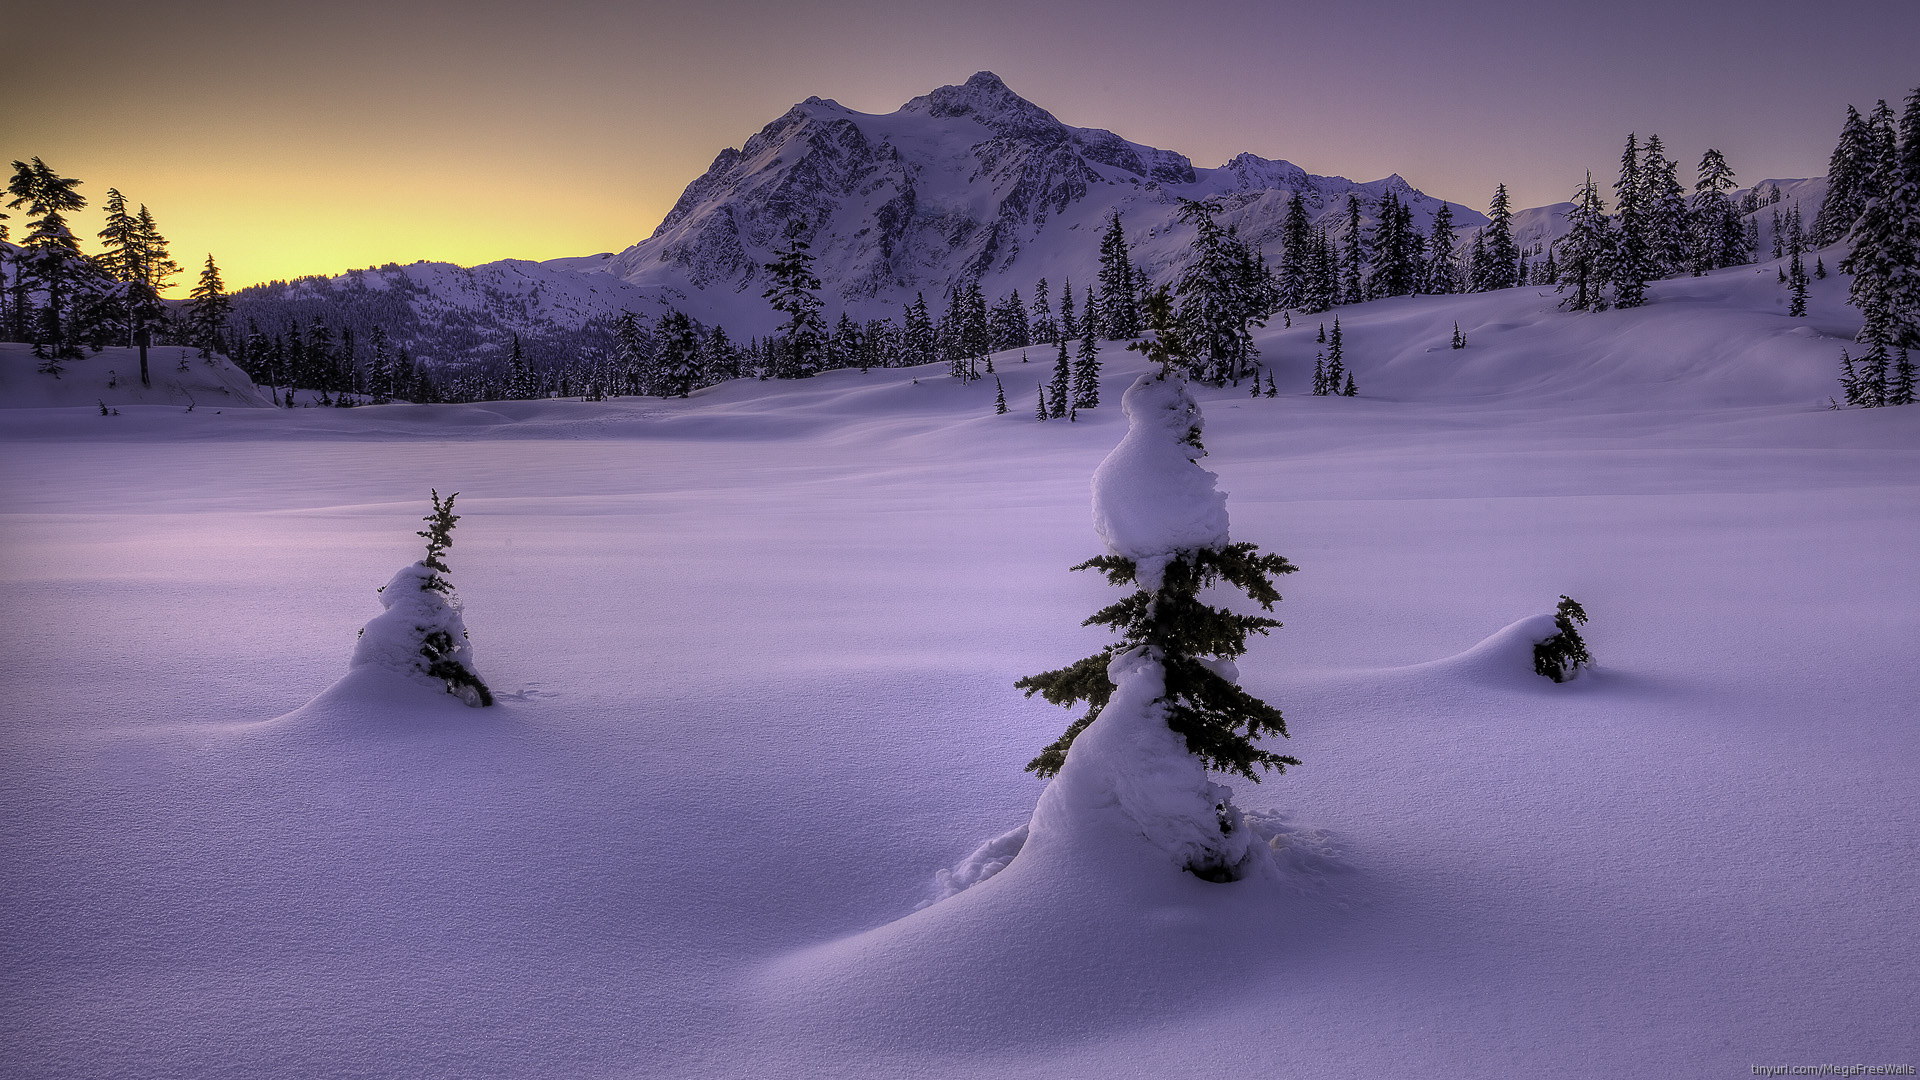 Mùa đông Yukon với những cảnh sắc tuyệt đẹp, tuyết phủ trắng trang và không khí lạnh giá quyến rũ sẽ khiến bạn thích thú. Những hình ảnh đầy màu sắc của mùa đông Yukon sẽ khiến bạn muốn tận hưởng những trải nghiệm tuyệt vời nhất ở đây.